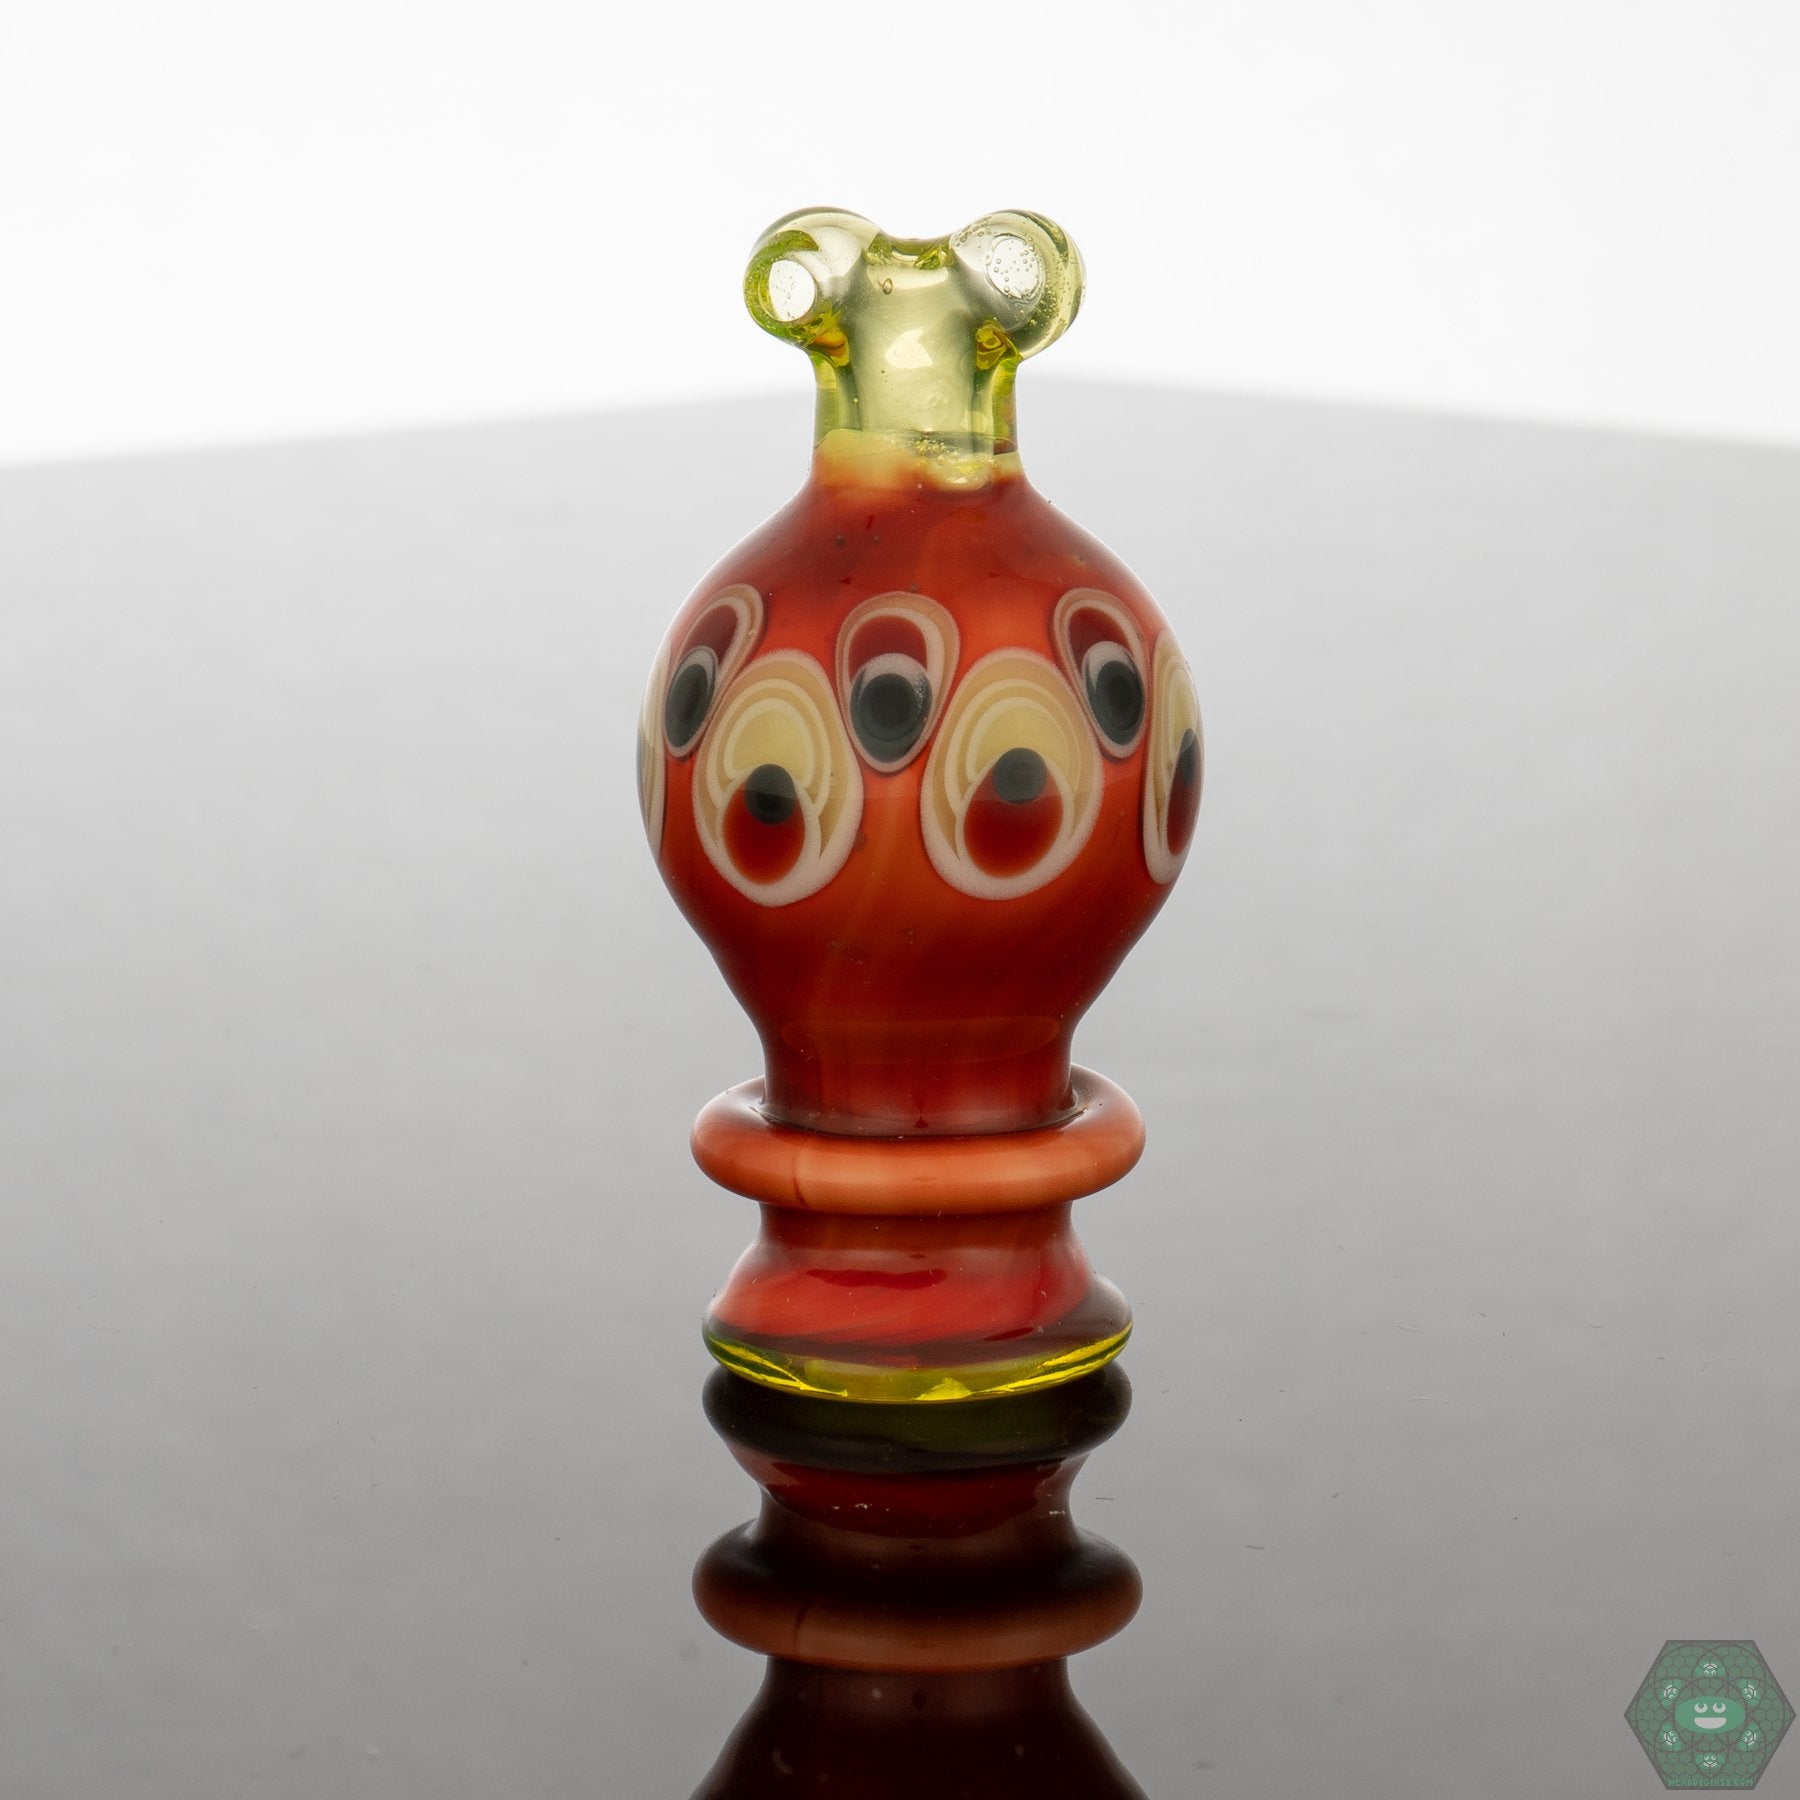 Natrix Glass - Spinner Caps - @Natrix_glass - HG